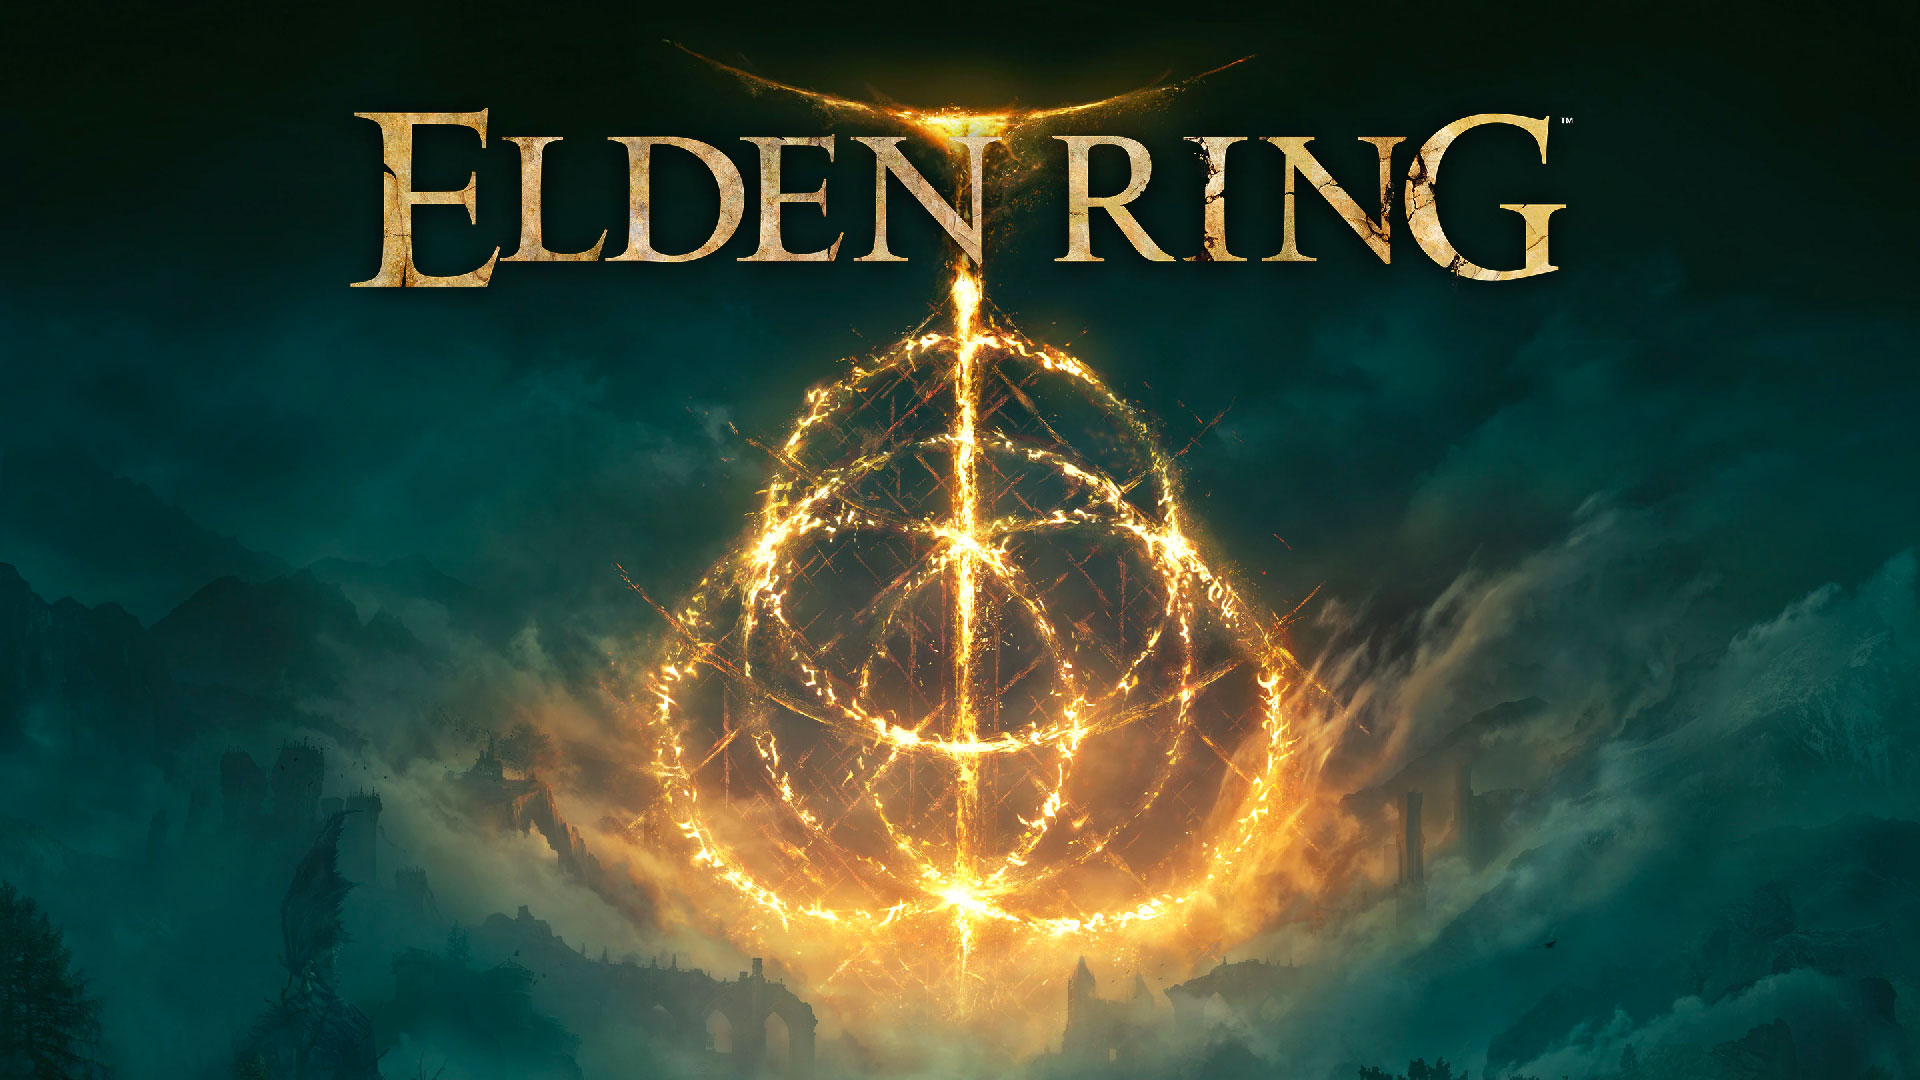 Elden Ring review – Game of Thrones meets Dark Souls